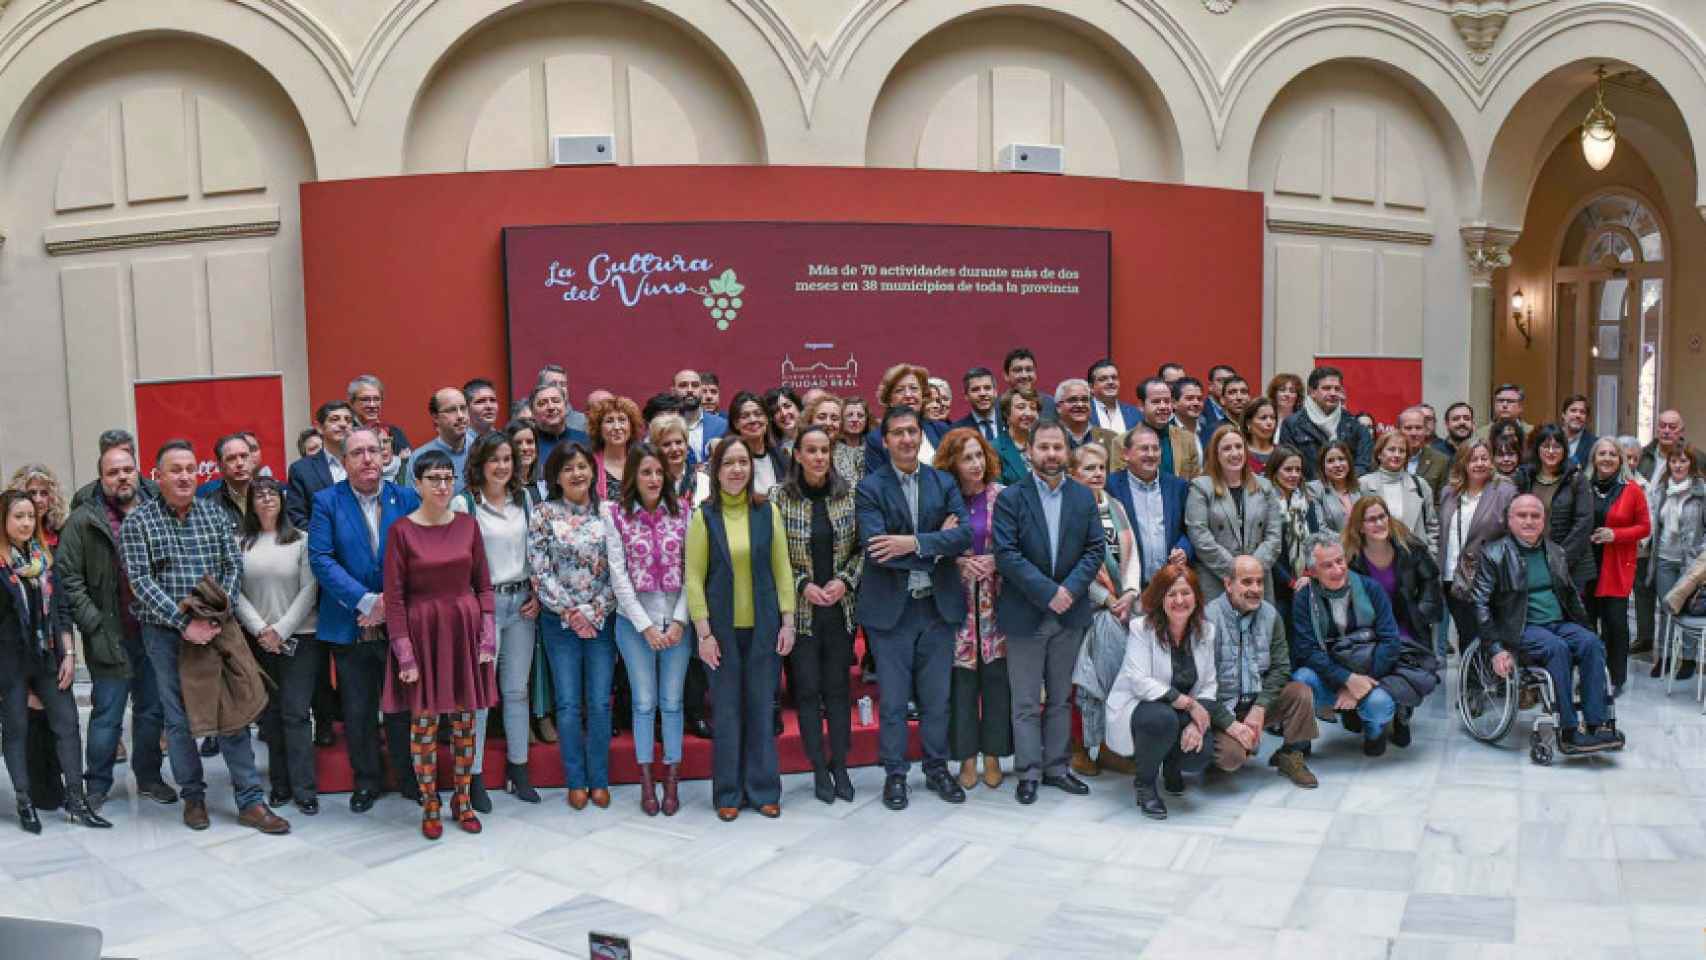 La Diputación de Ciudad Real impulsa “La Cultura del Vino” con más de 70 actividades